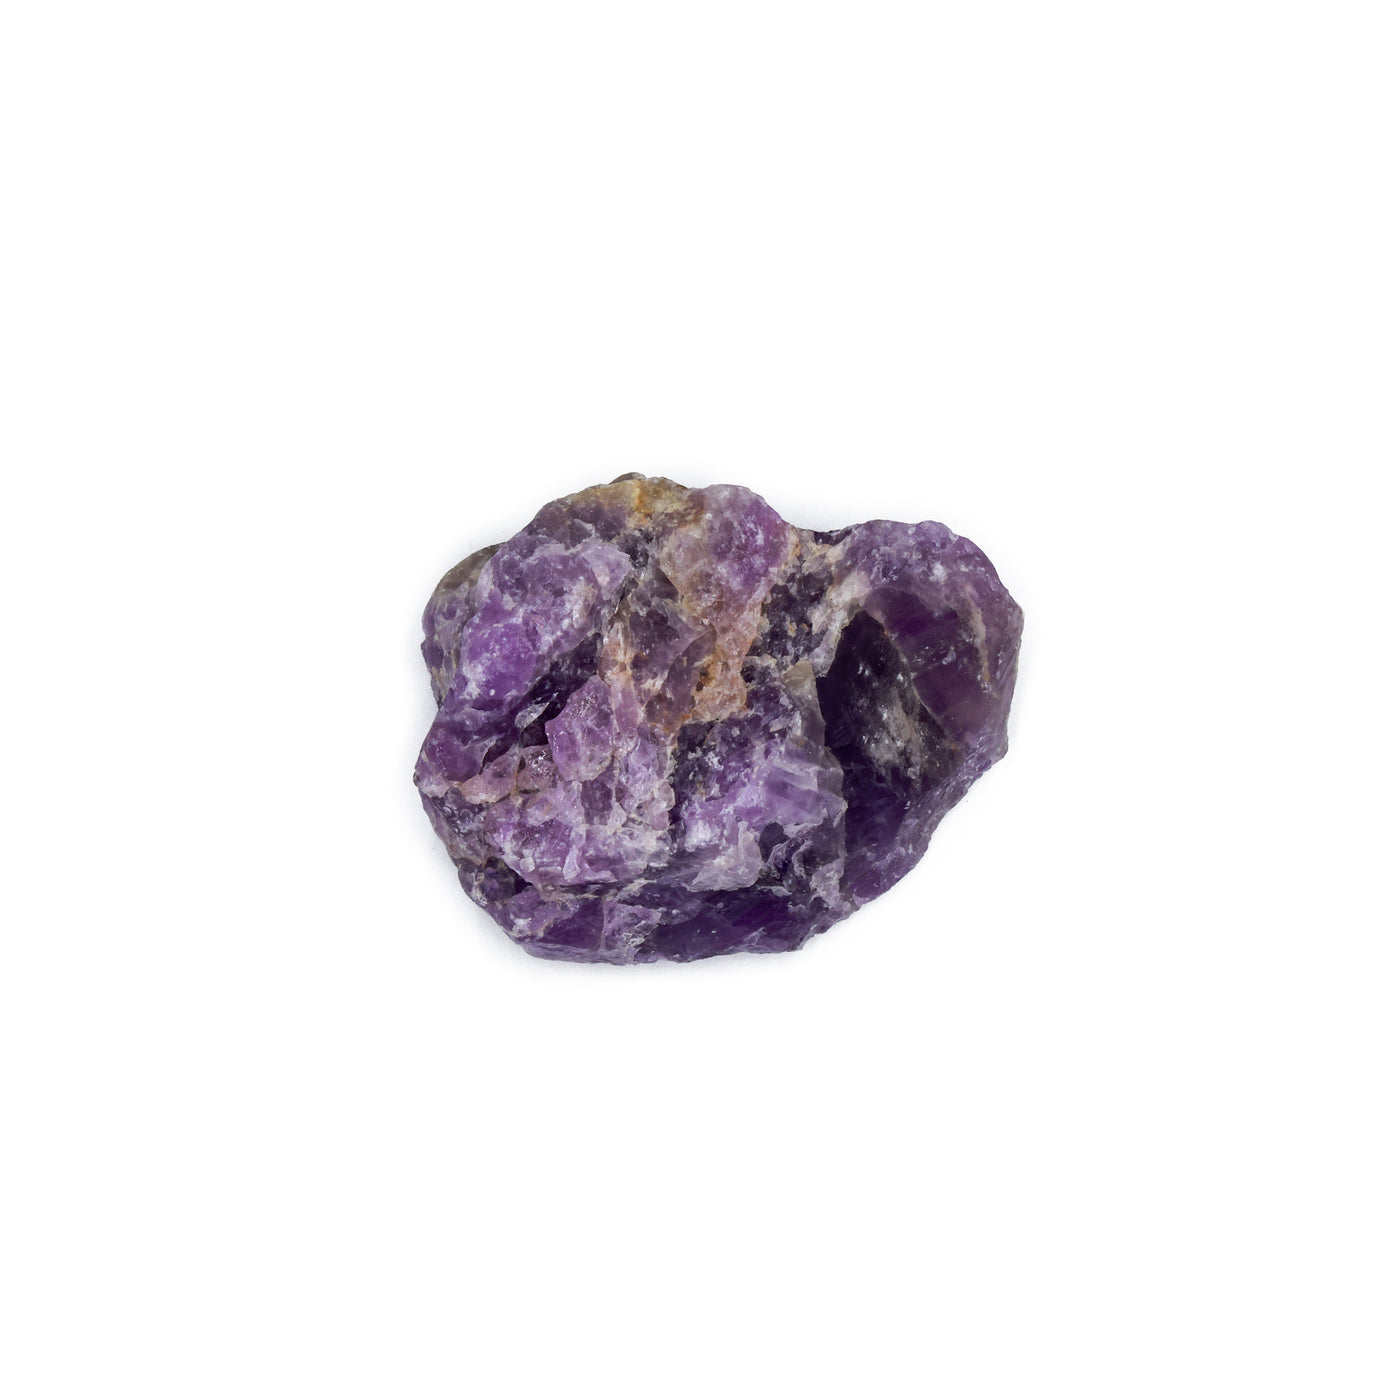 Raw stone: Amethyst rock